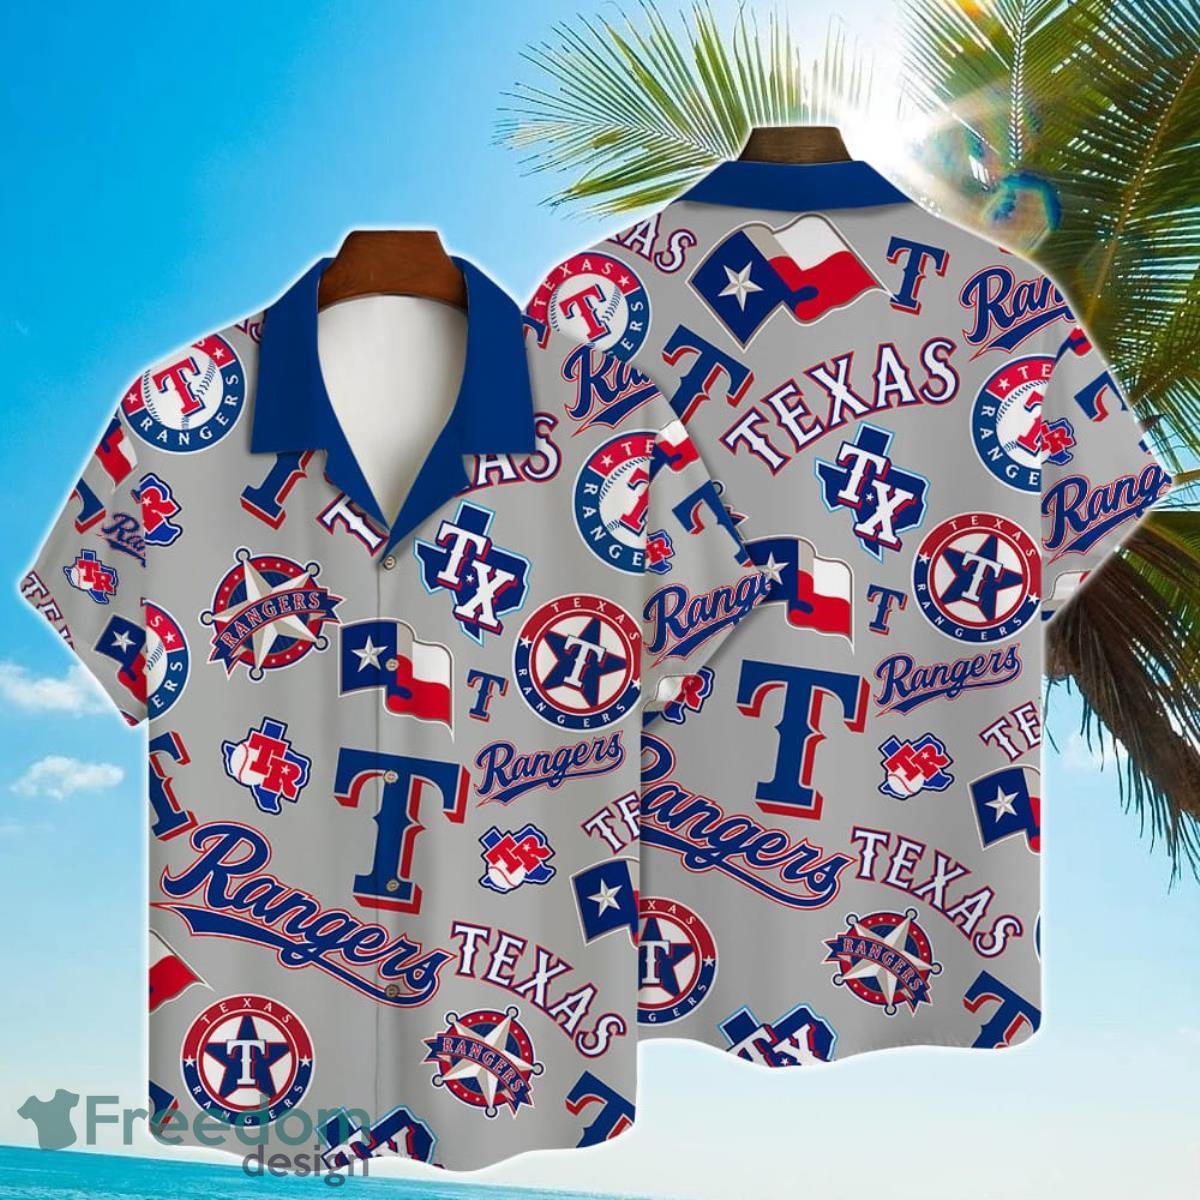 Texas Rangers Major League Baseball 3D Print Hawaiian Shirt For Men Women  Fans - Freedomdesign